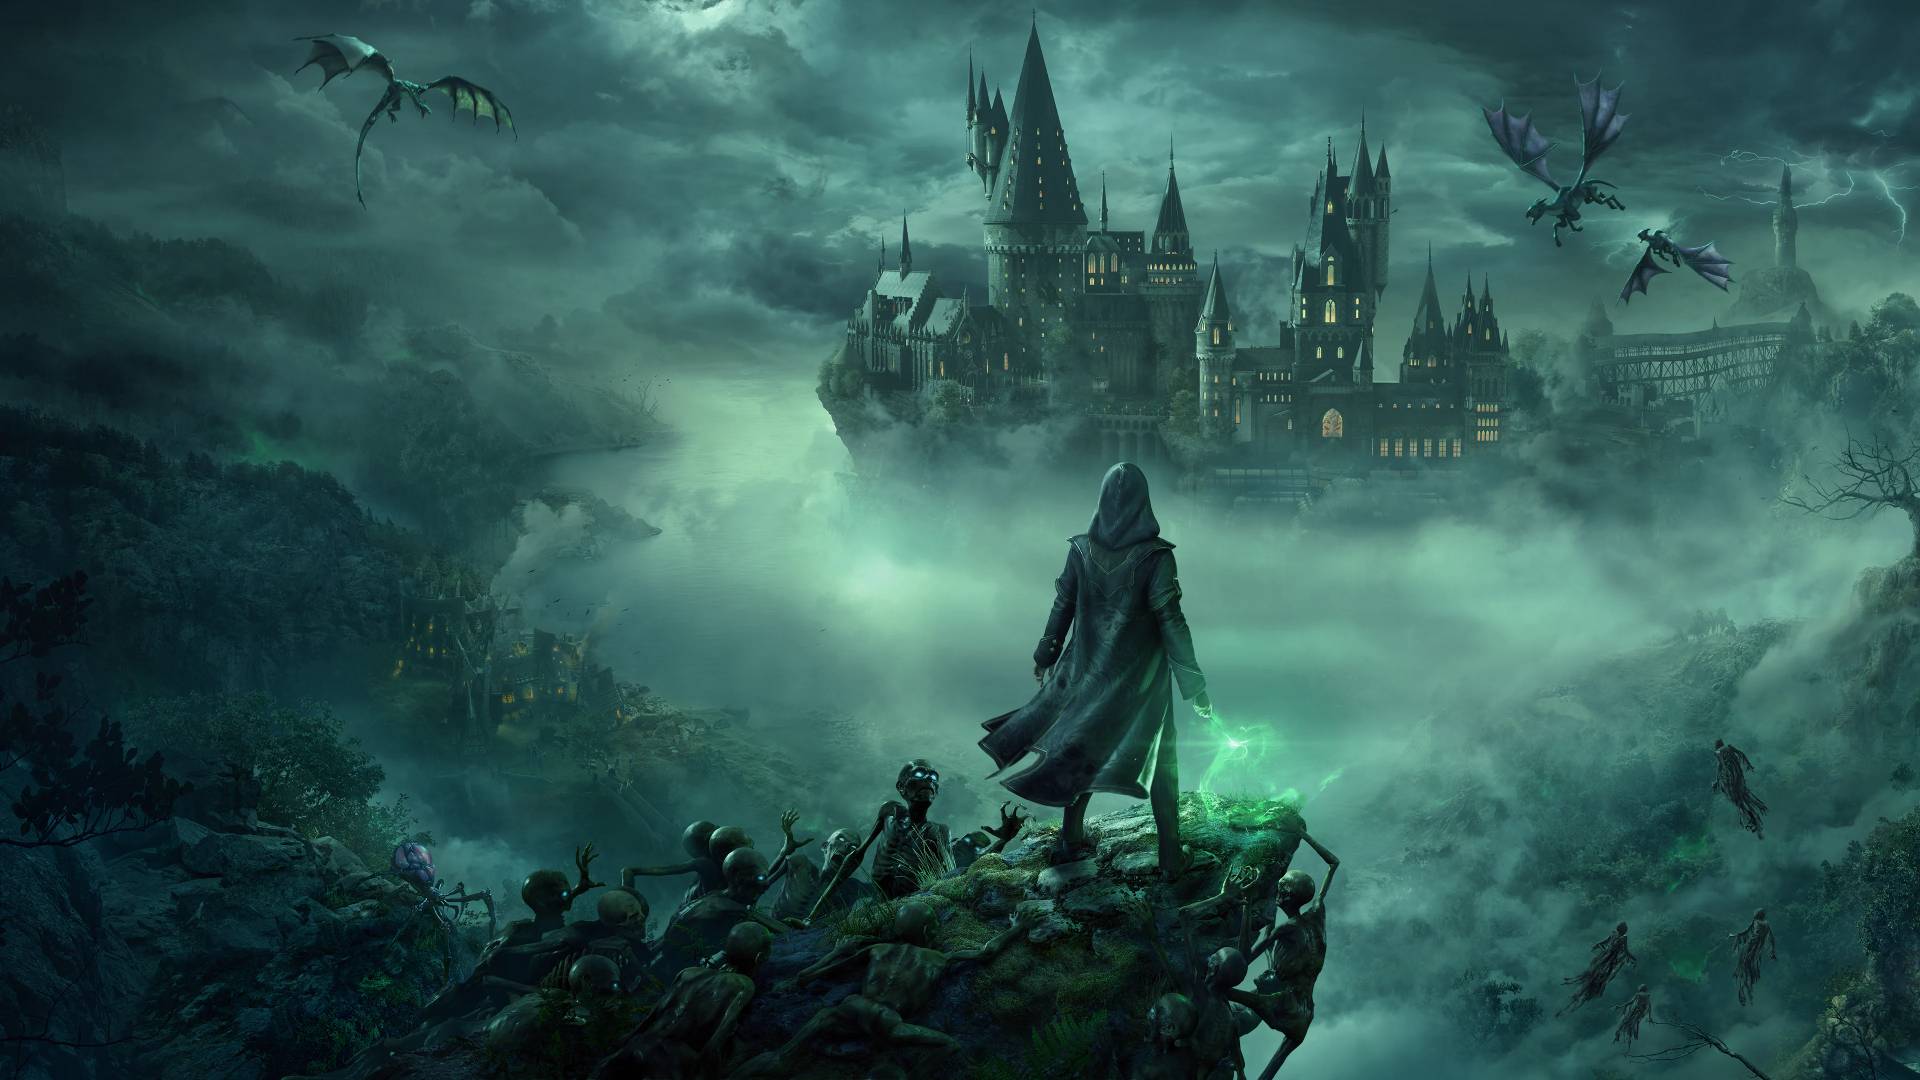 Hogwarts Legacy : Harry Potter est (presque) de retour ! 